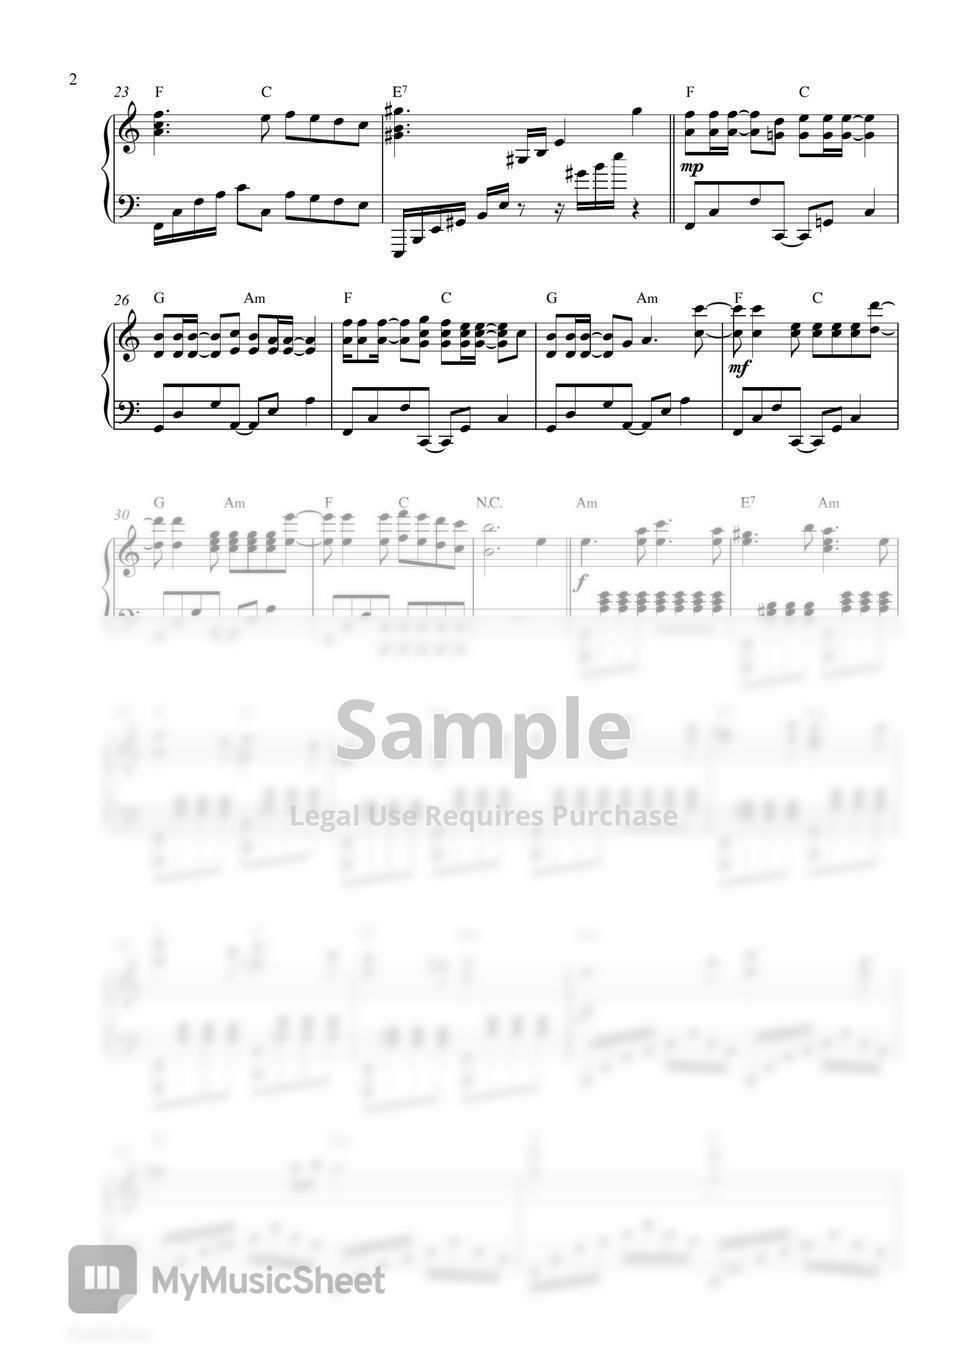 Alan Walker - Lovesick (Piano Sheet) by Pianella Piano